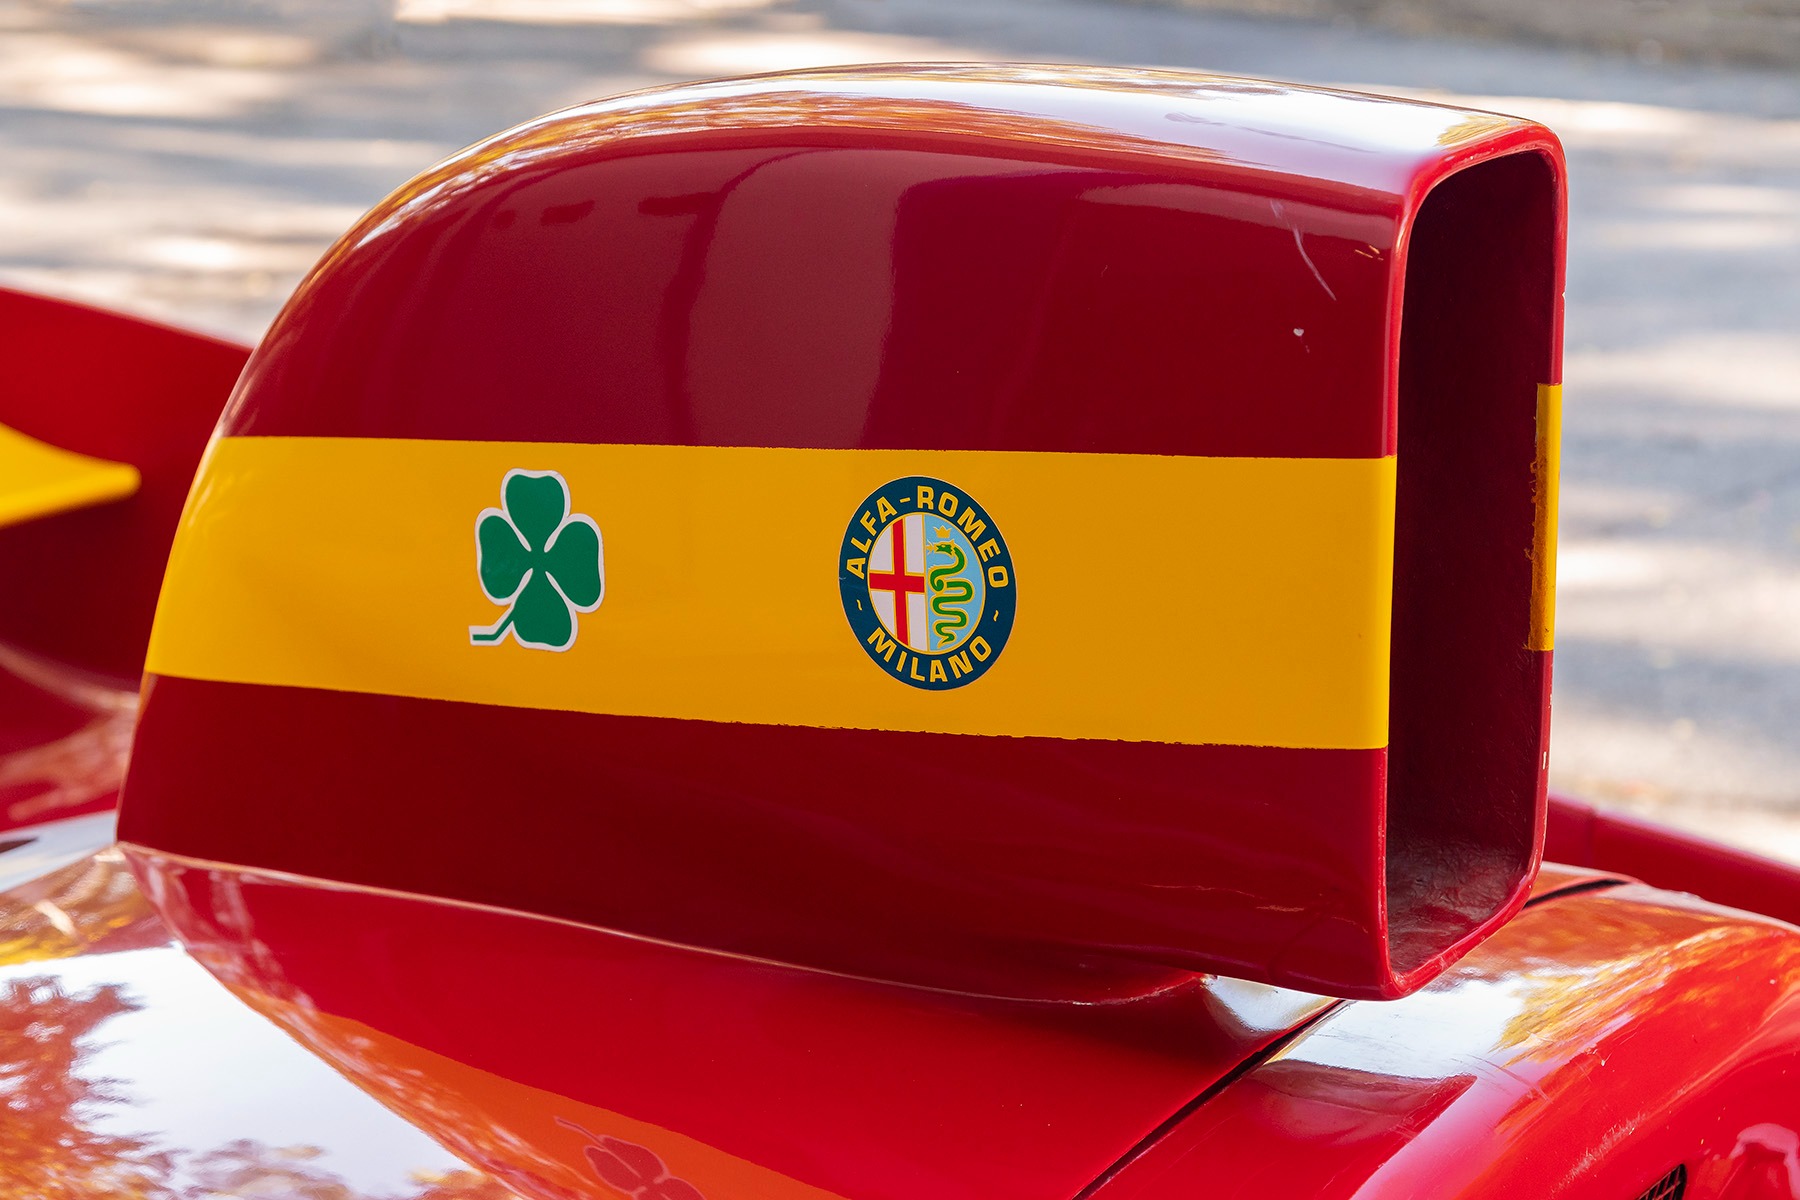 Used 1974 Alfa Romeo Tipo 33 312 1665167526 3